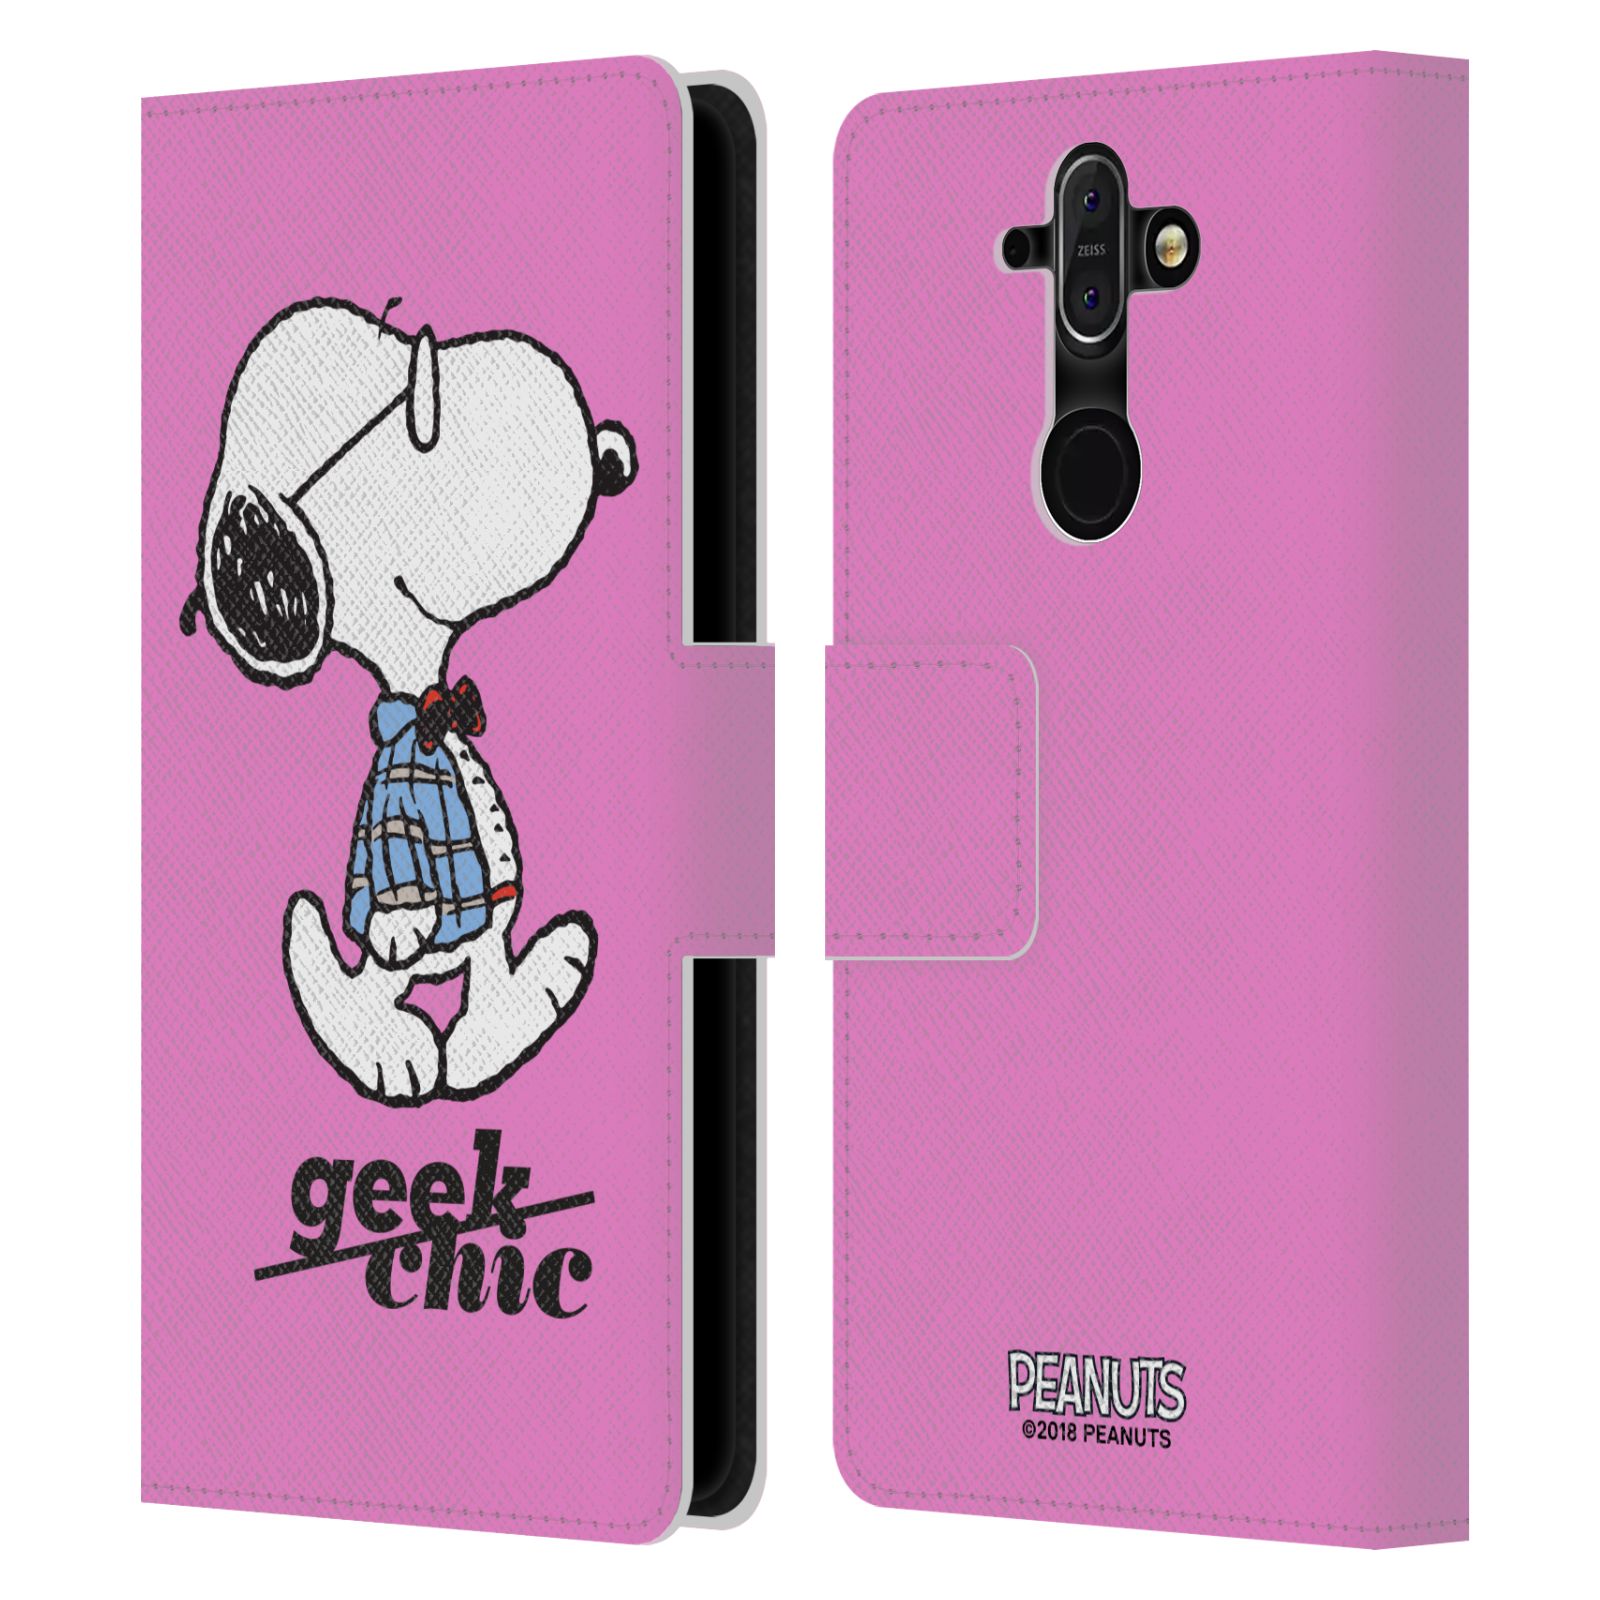 Pouzdro na mobil Nokia 8 Sirocco - Head Case - Peanuts - růžový pejsek snoopy nerd